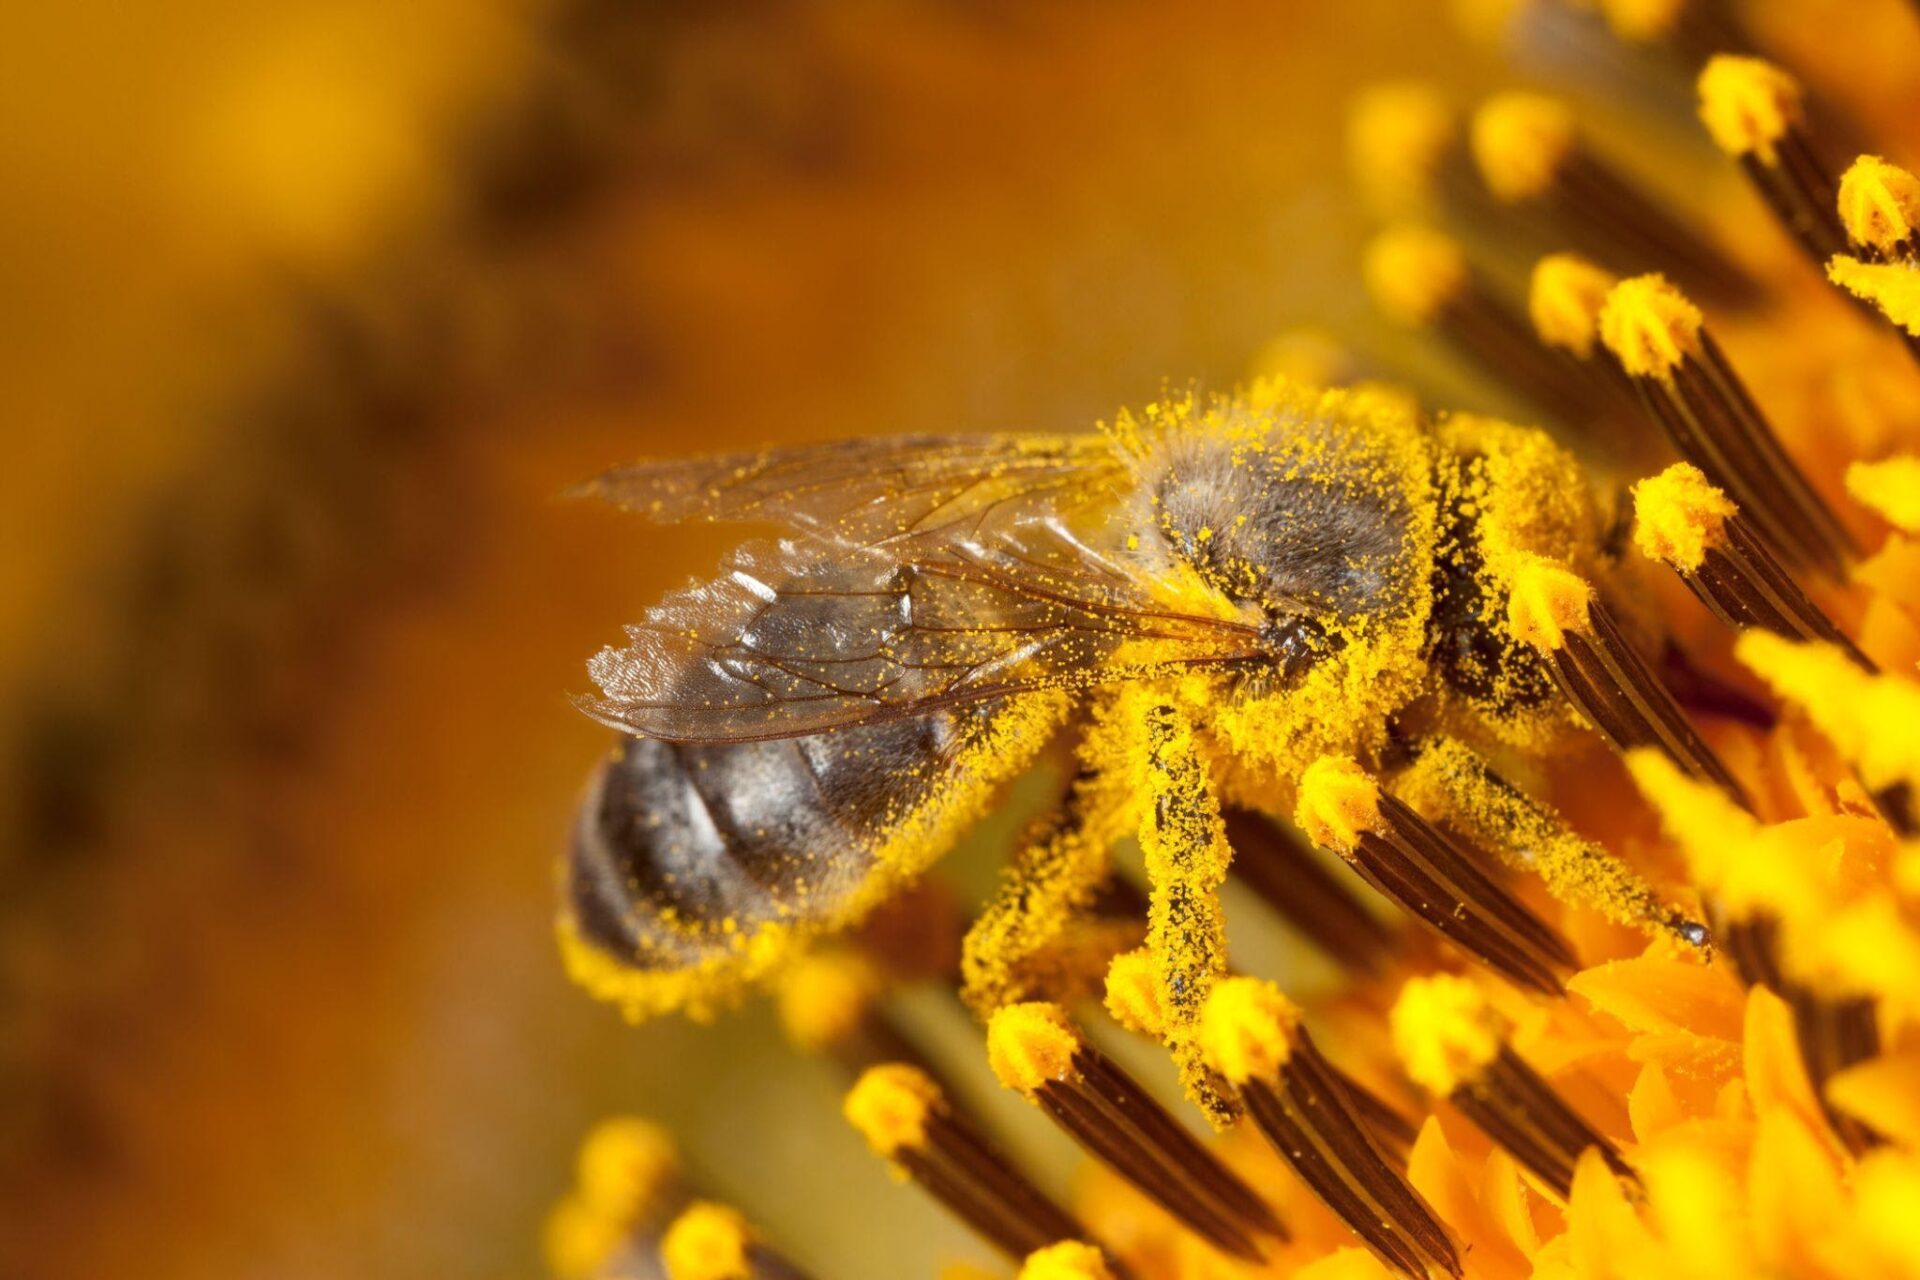 Jokainen kukka tuottaa hunajaa, jolla on tietty maku, väri ja rakenne.